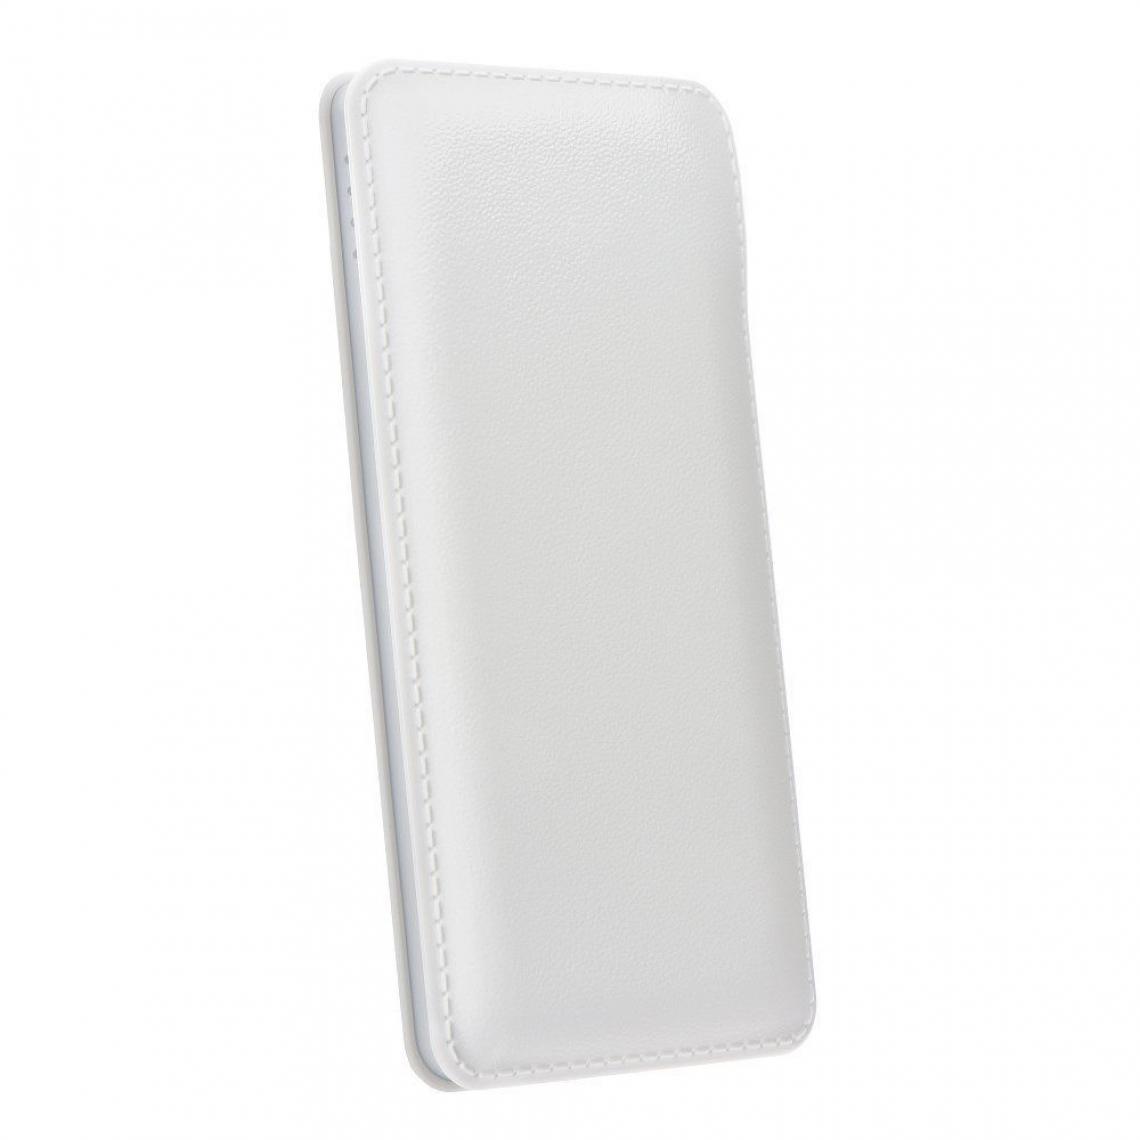 Ozzzo - Chargeur batterie externe 30000 mAh powerbank ozzzo blanc pour LG K12+ - Autres accessoires smartphone